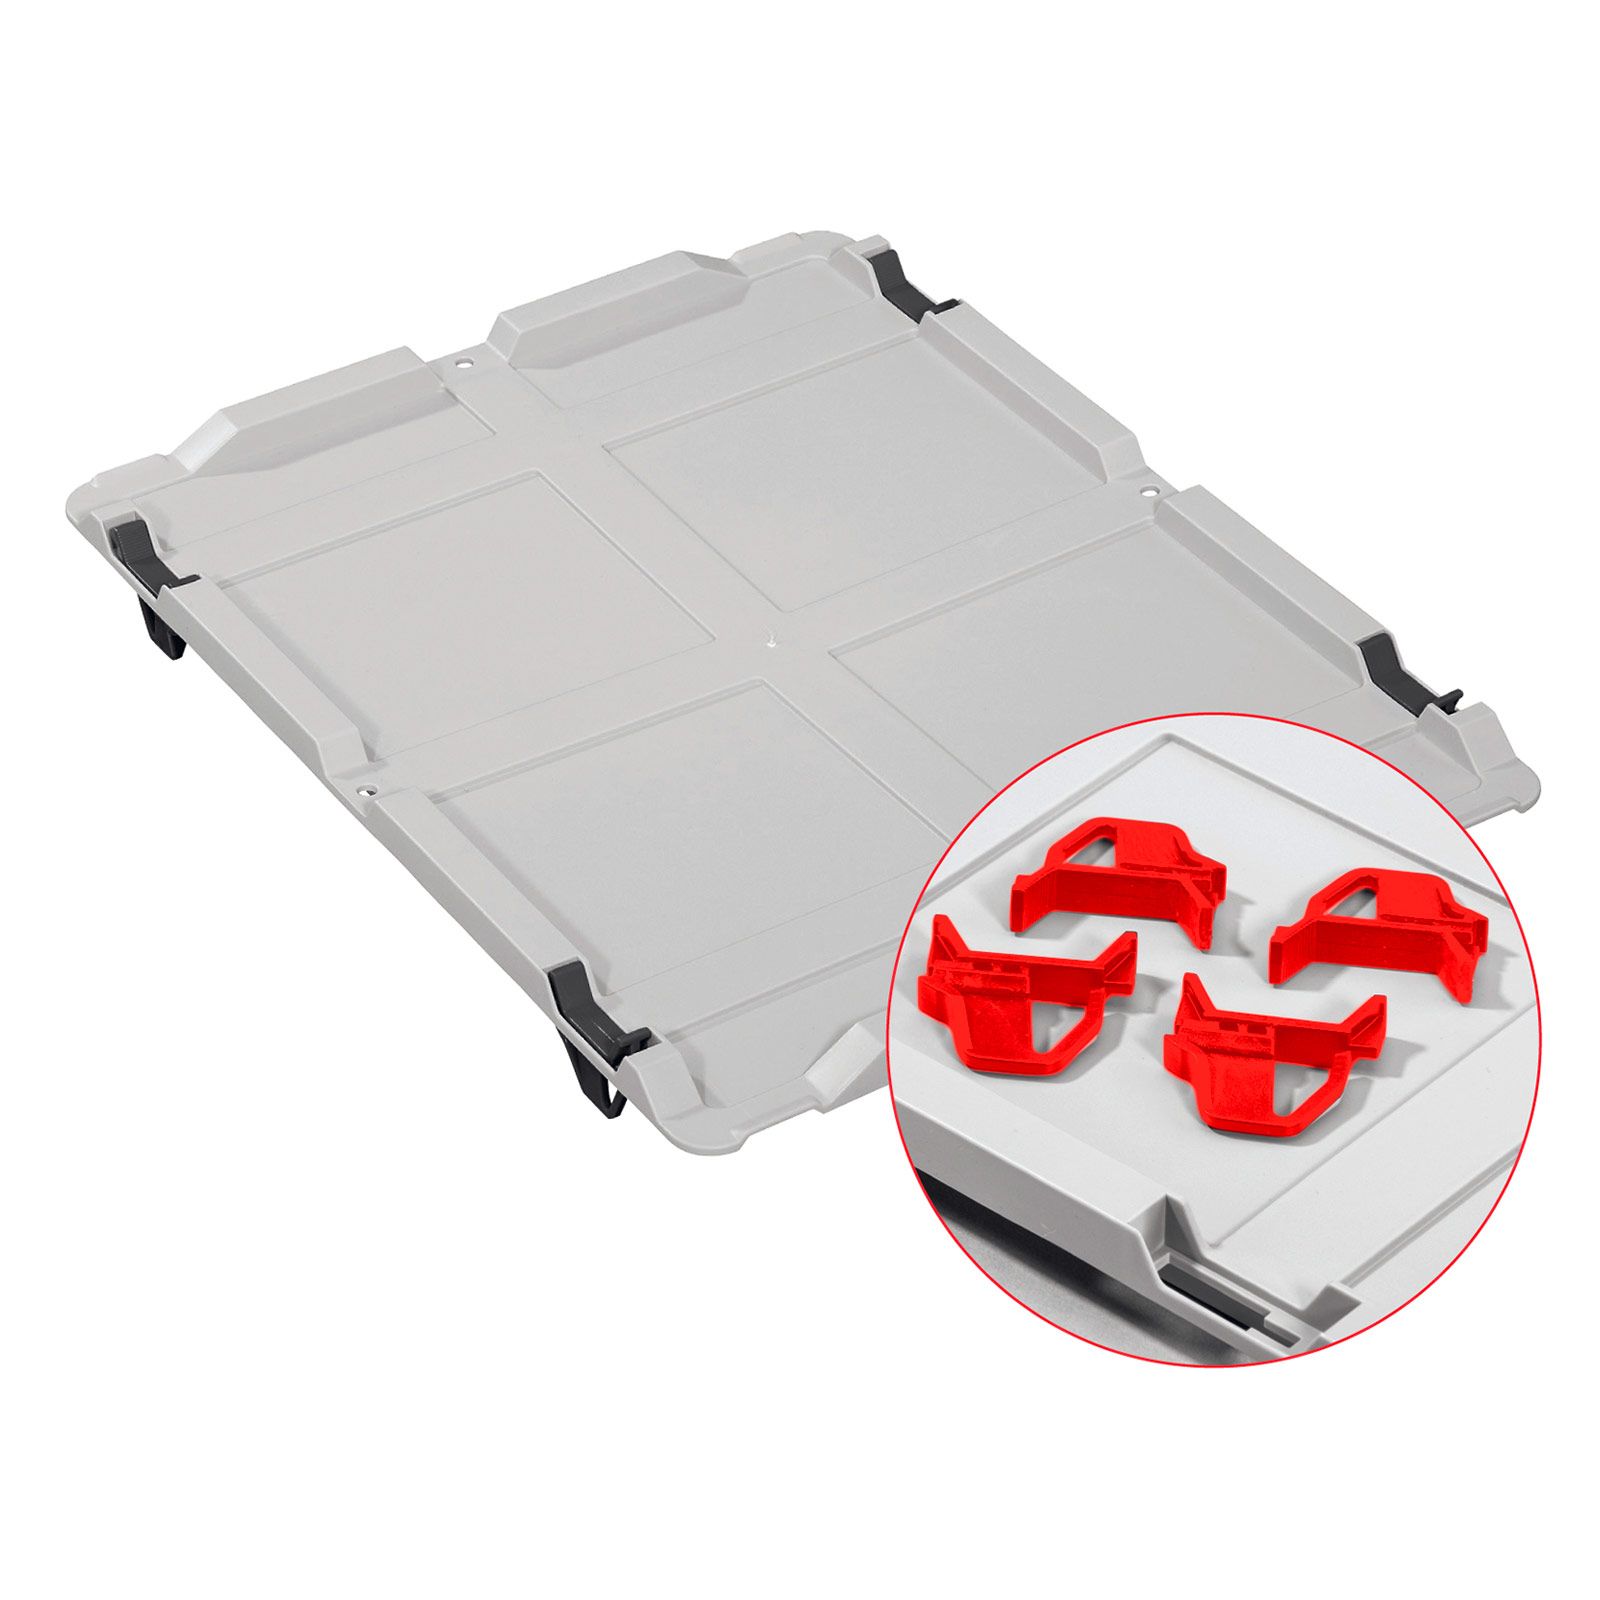 Auflagedeckel Set Eurobox NextGen mit 4 roten Schiebeschnappverschlüssen | BxT 30x40cm | Eurobehälter, Transportbox, Transportbehälter, Stapelbehälter